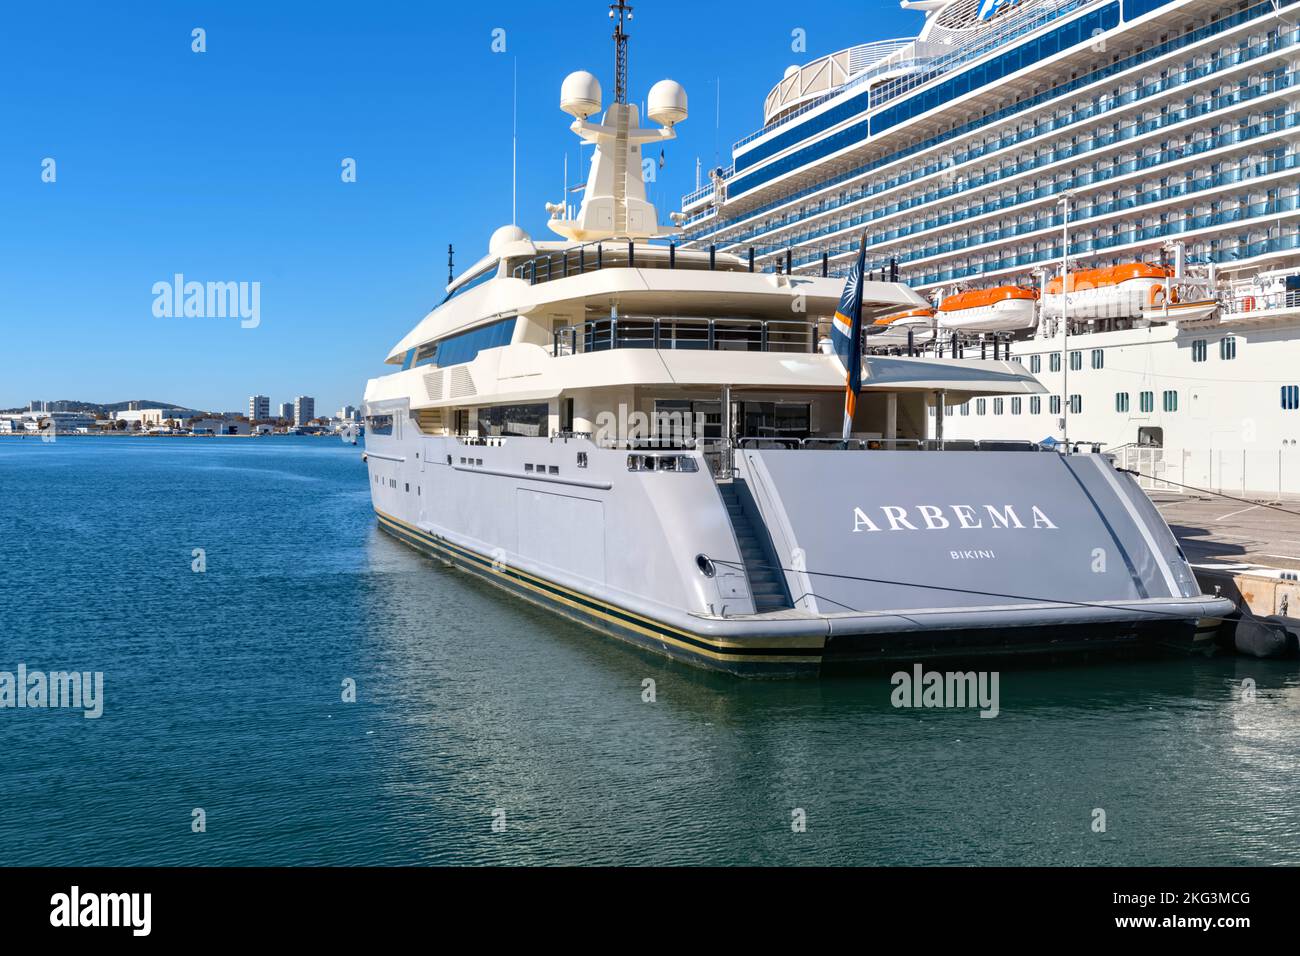 Arbema Superyacht amarré à côté du navire de croisière Regal Princess au port de Toulon, France, novembre 2022 Banque D'Images